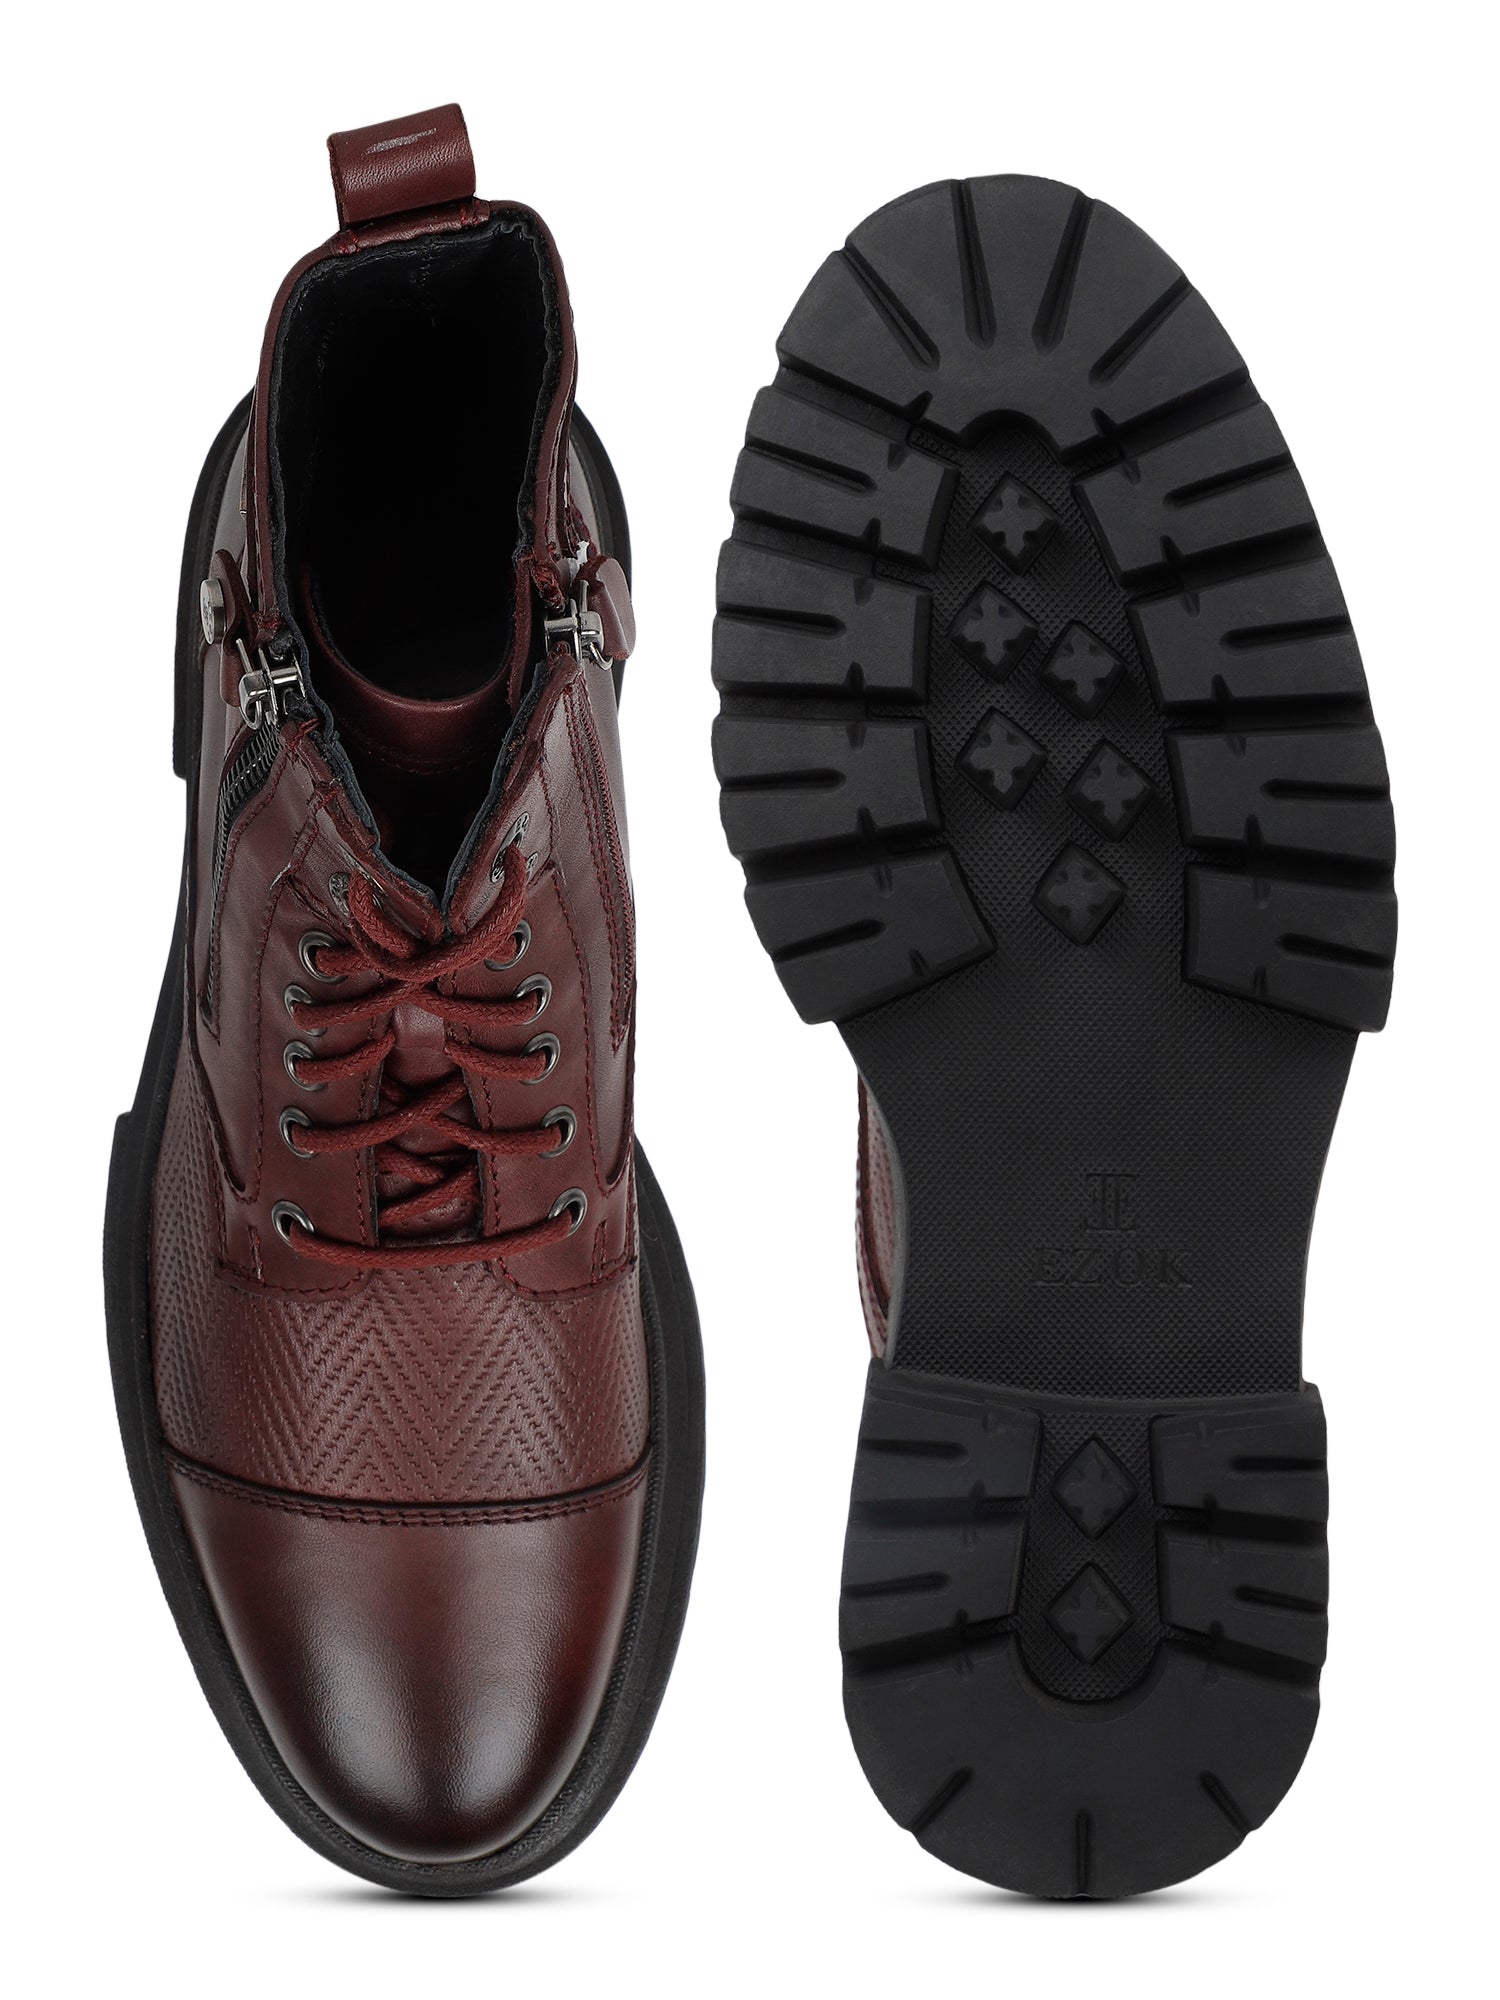 Ezok Bordo Leather Boot Shoes For Men(2501)